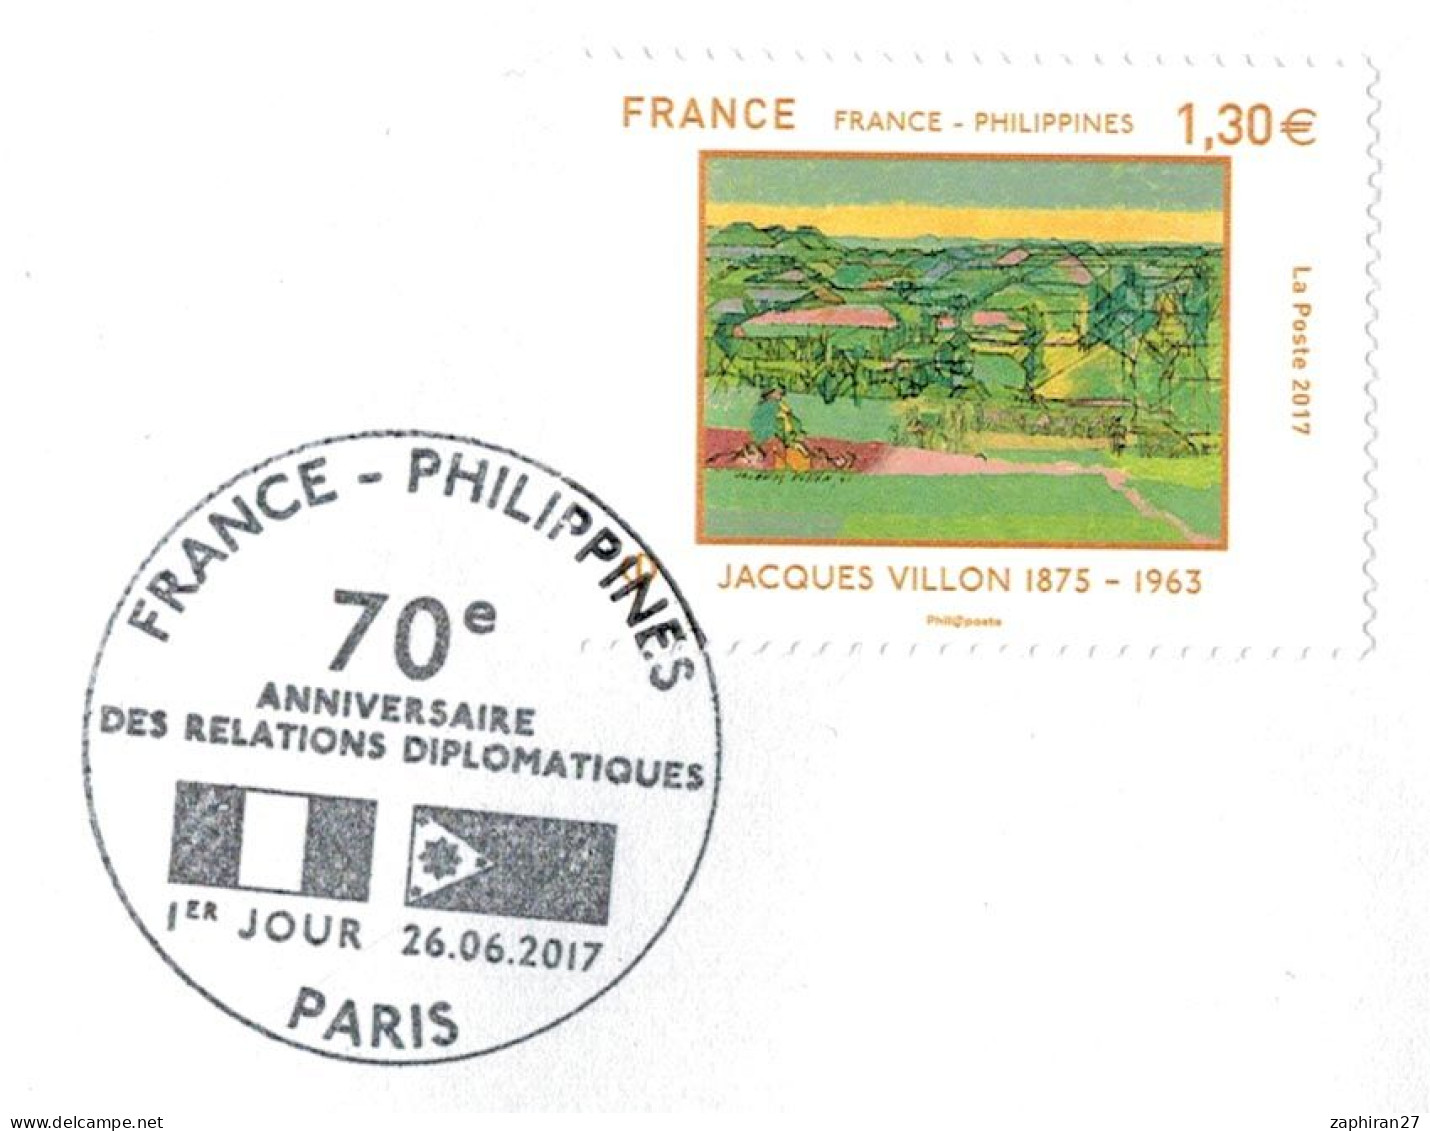 PEINTURE IMPRESSIONNISME PARIS 70e ANNIV DES RELATIONS DIPLOMATIQUES FRANCE PHILIPPINES JACQUES VILLON 26-6-2017 #413# - Impresionismo